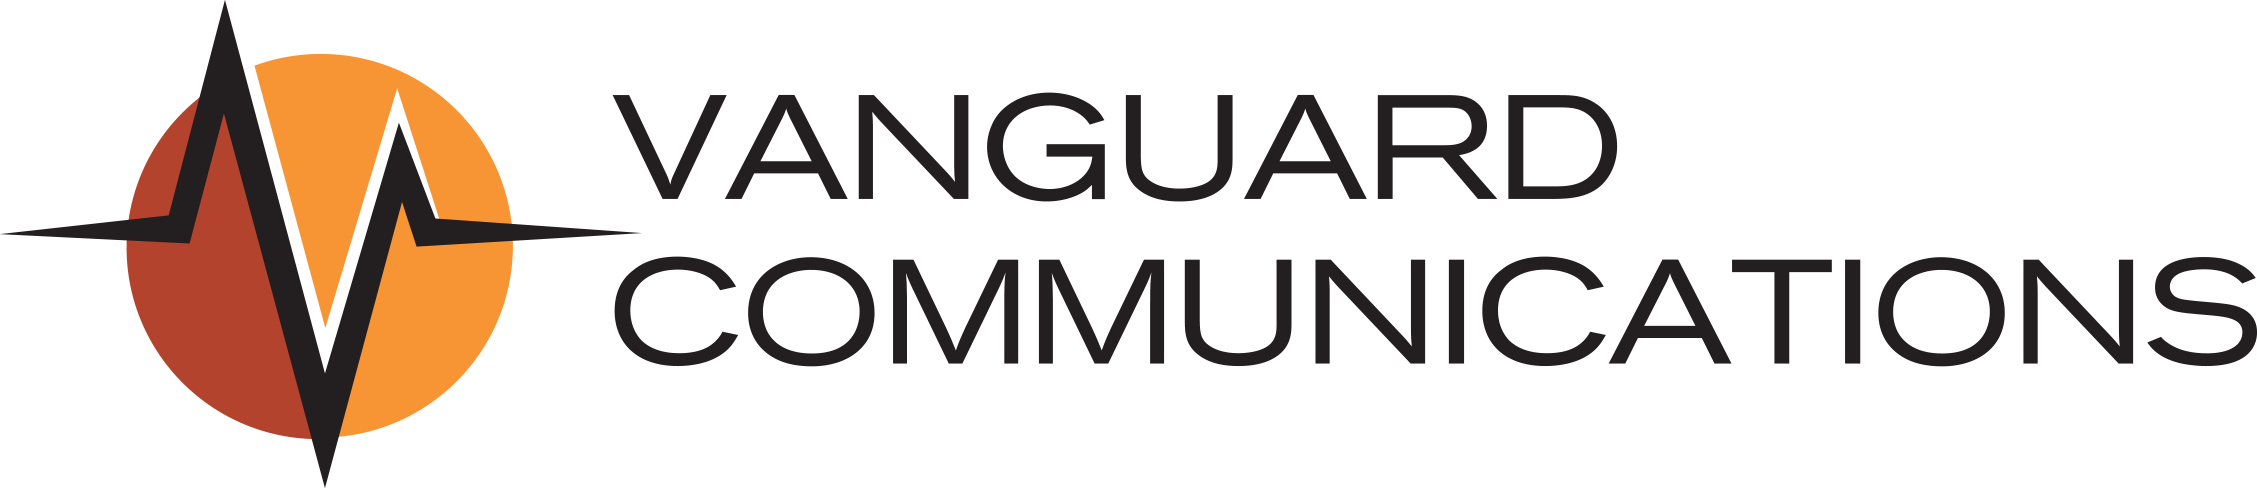 Vanguard Communications Logo